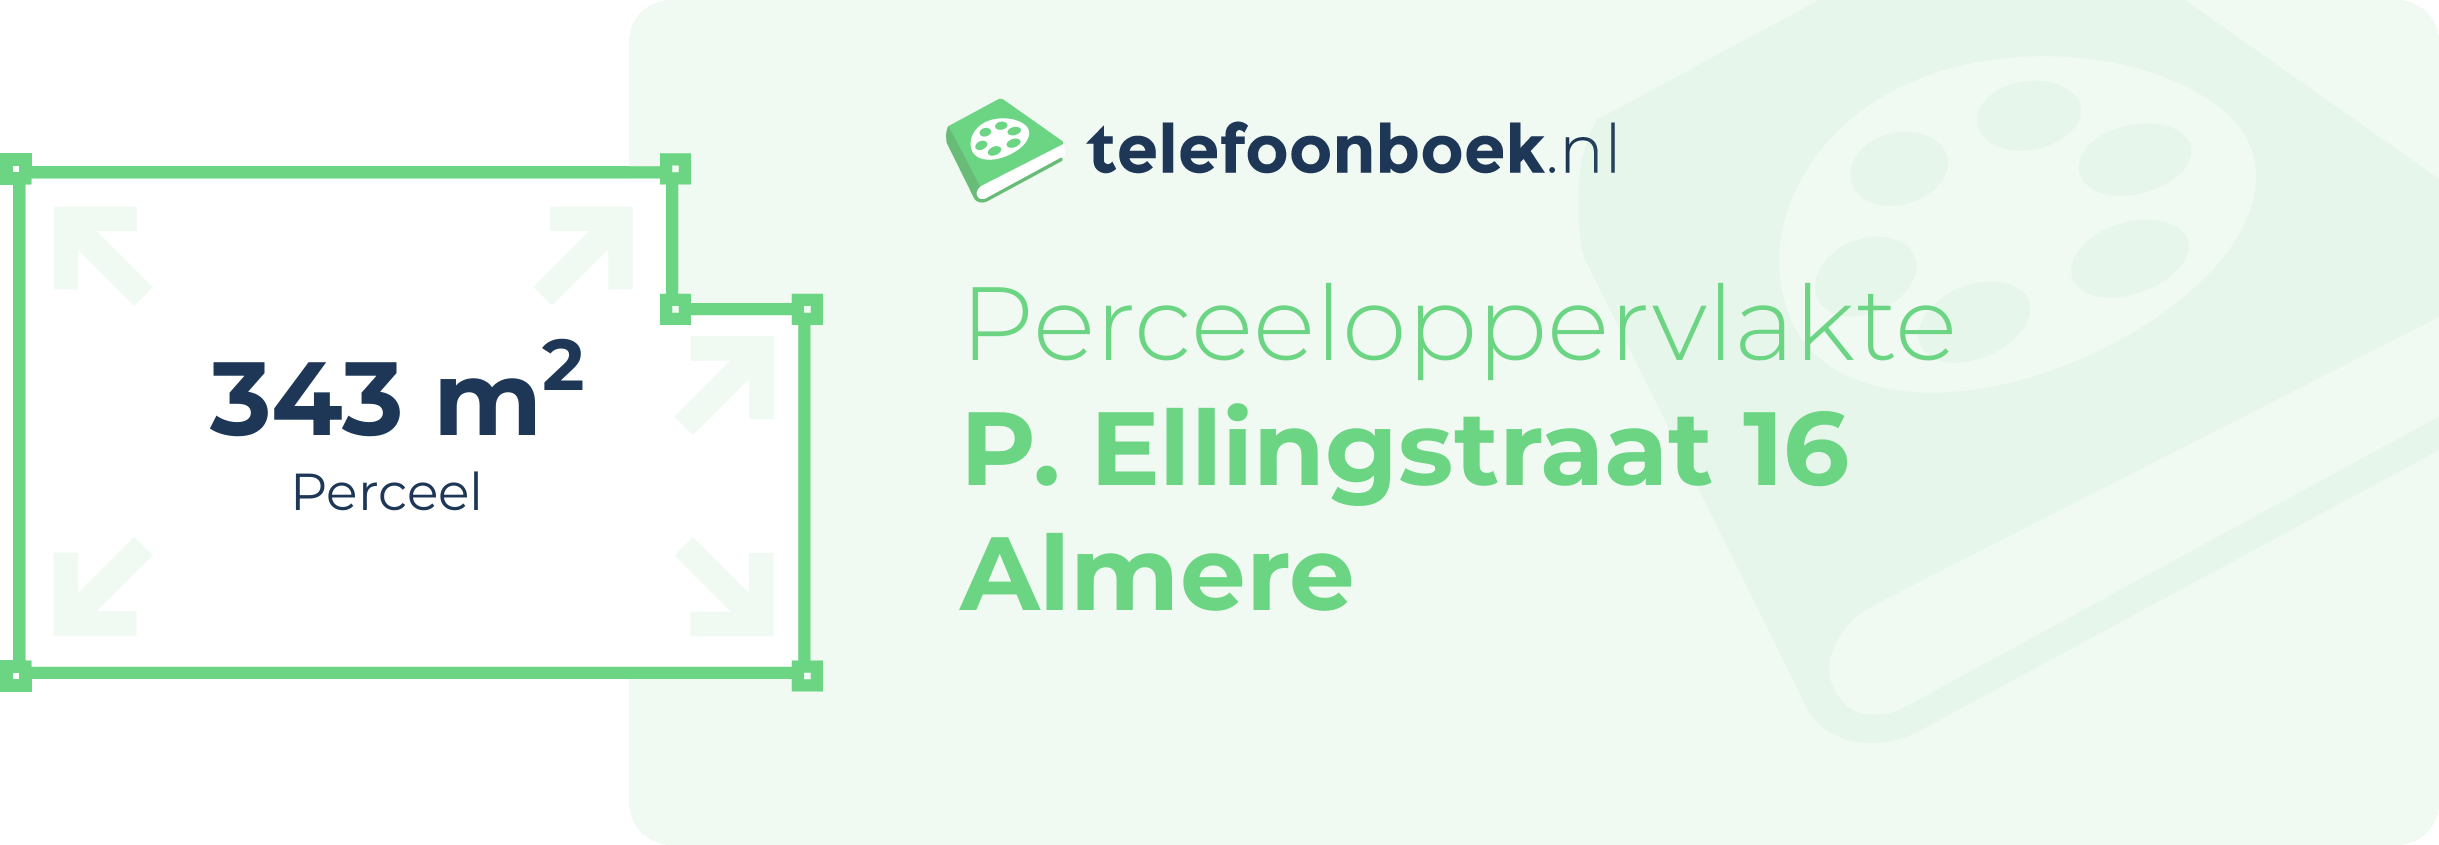 Perceeloppervlakte P. Ellingstraat 16 Almere